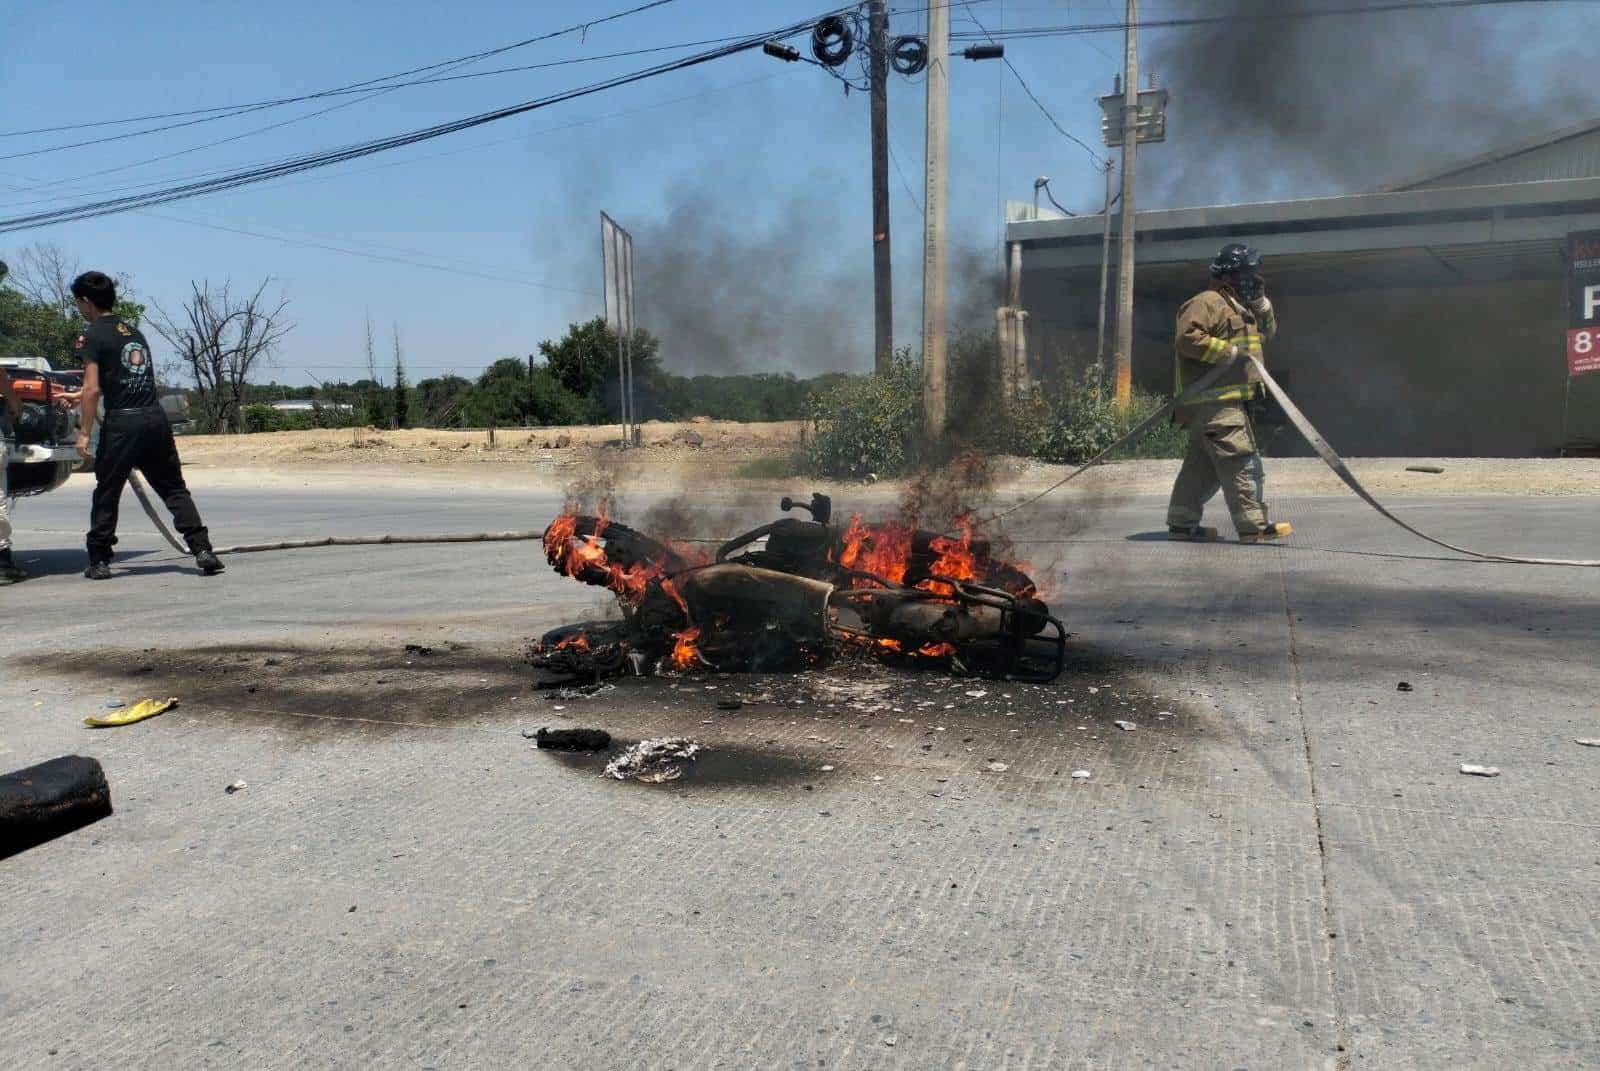 Un hombre terminó con quemaduras en varias puntos de su cuerpo, al derrapar su moto que terminó incendiándose en calles del municipio de Allende.